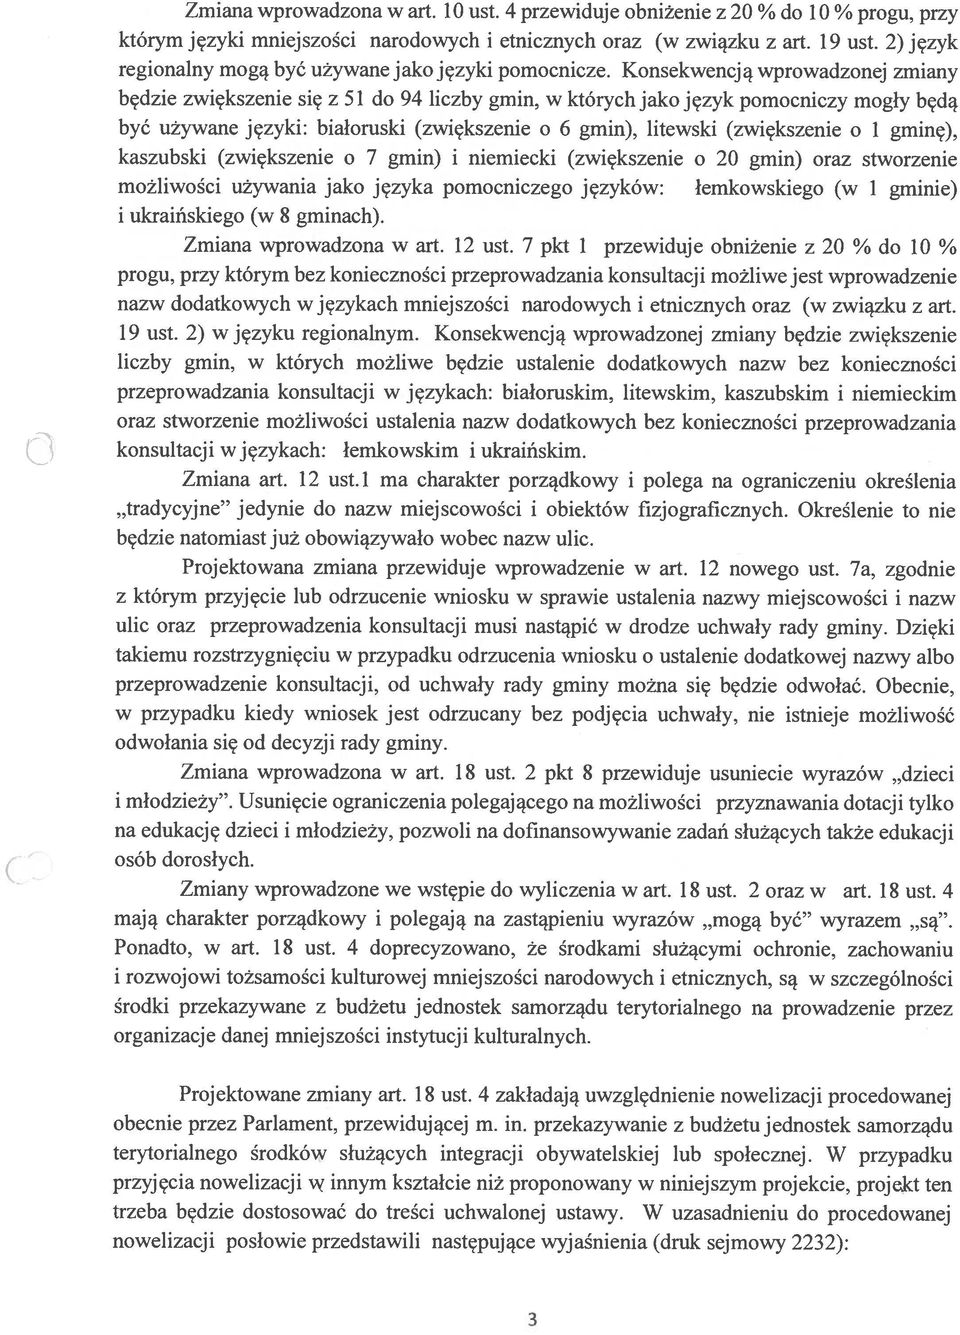 Konsekwencją wprowadzonej zmiany będzie zwiększenie się z 51 do 94 liczby gmin, w których jako język pomocniczy mogły będą być używane języki: białoruski (zwiększenie o 6 gmin), litewski (zwiększenie